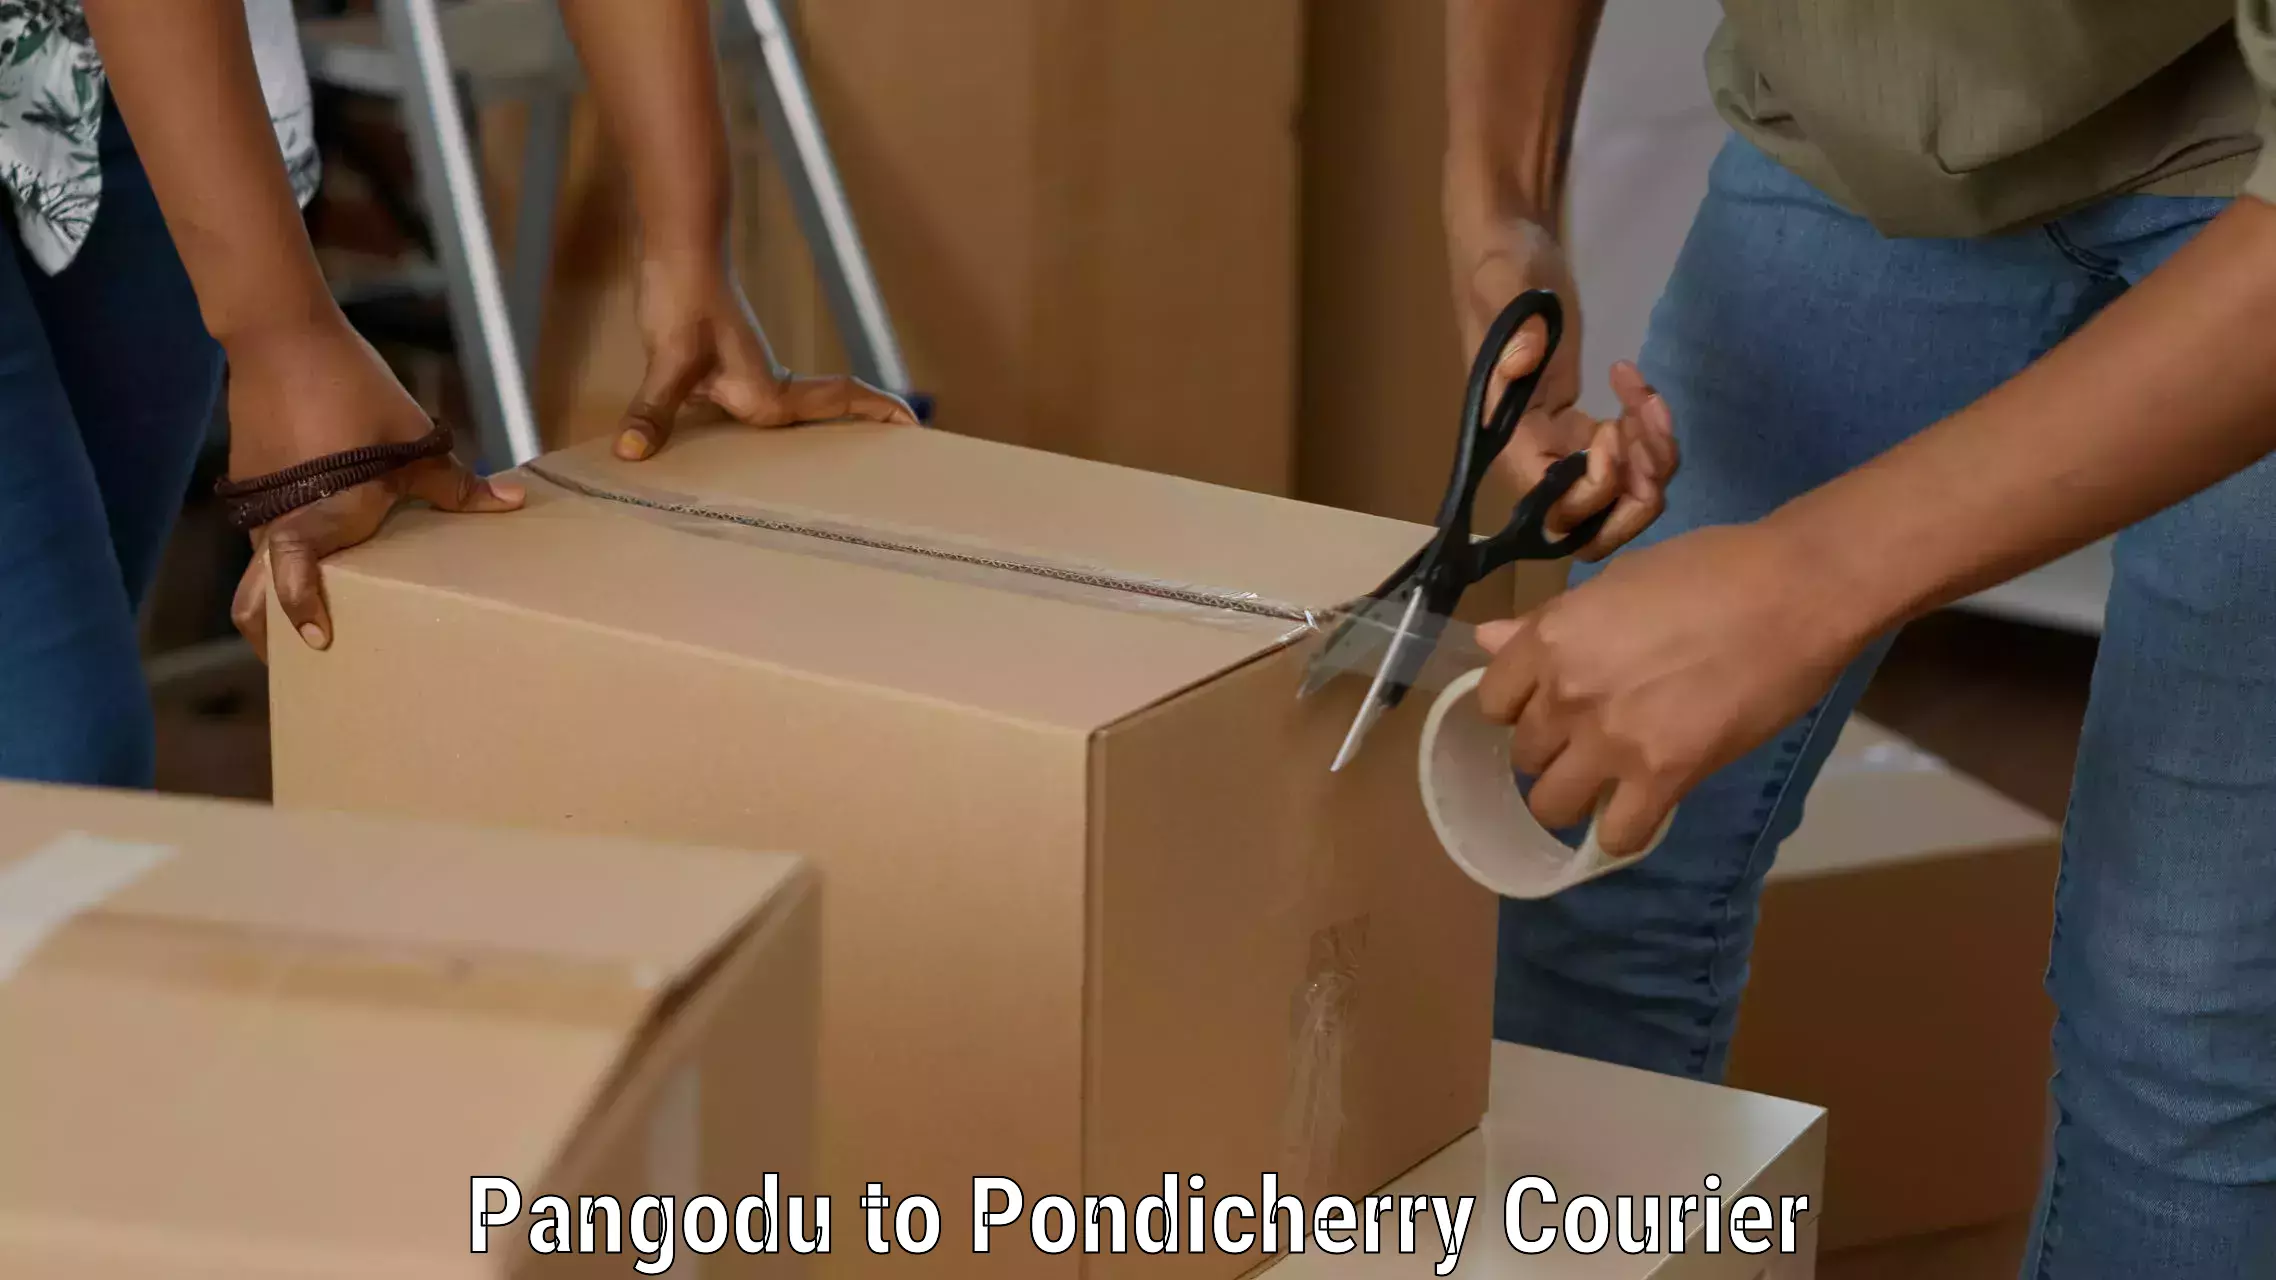 Cash on delivery service Pangodu to Pondicherry University